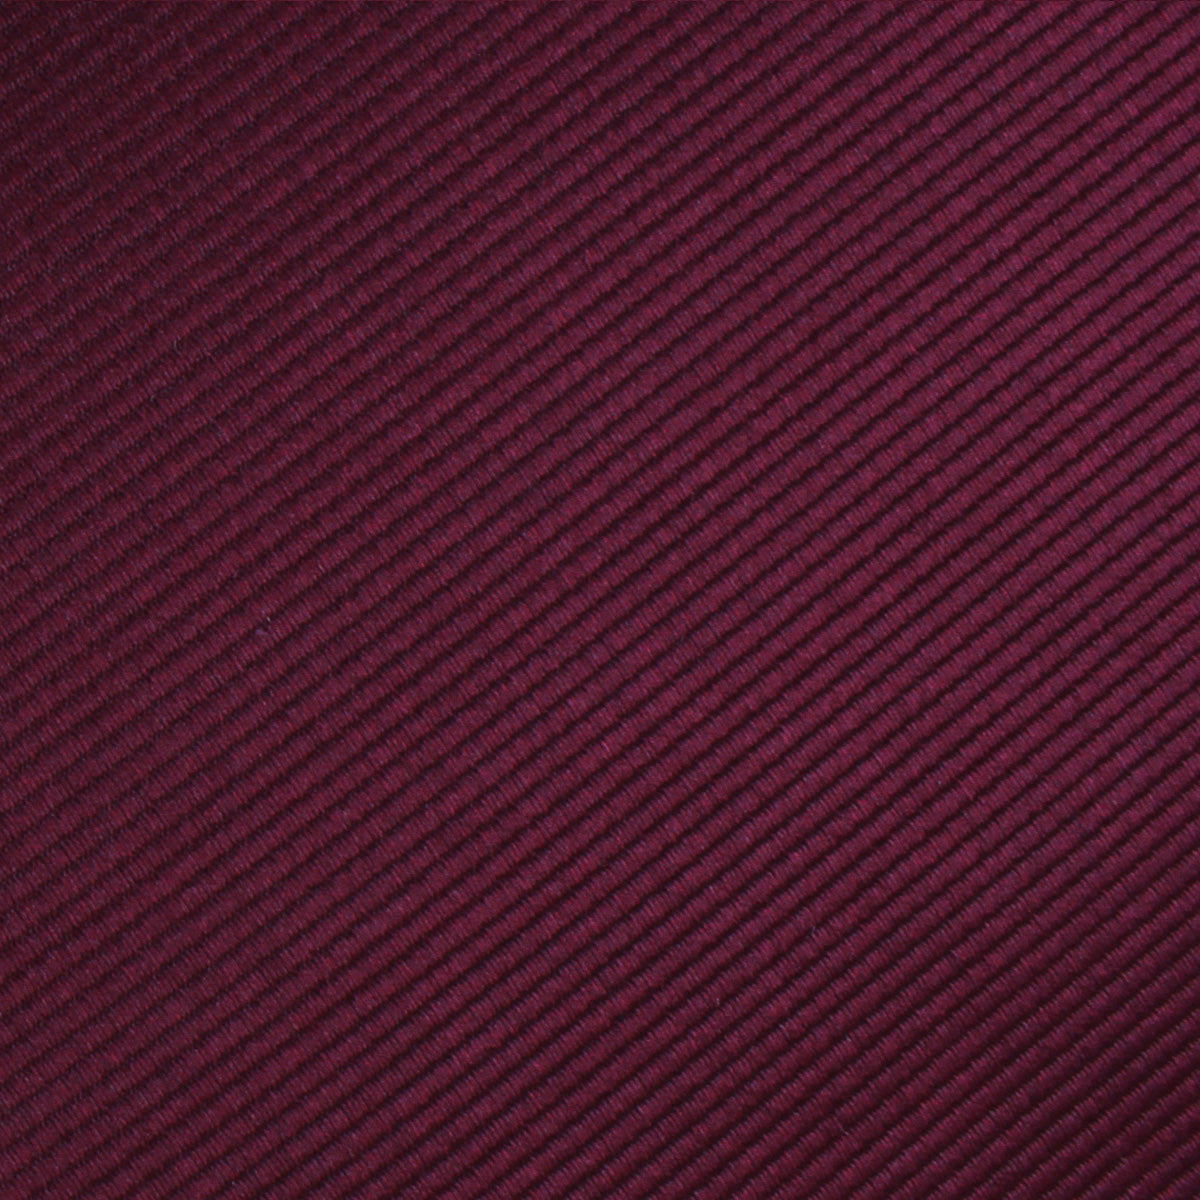 Dark Merlot Wine Twill Necktie Fabric